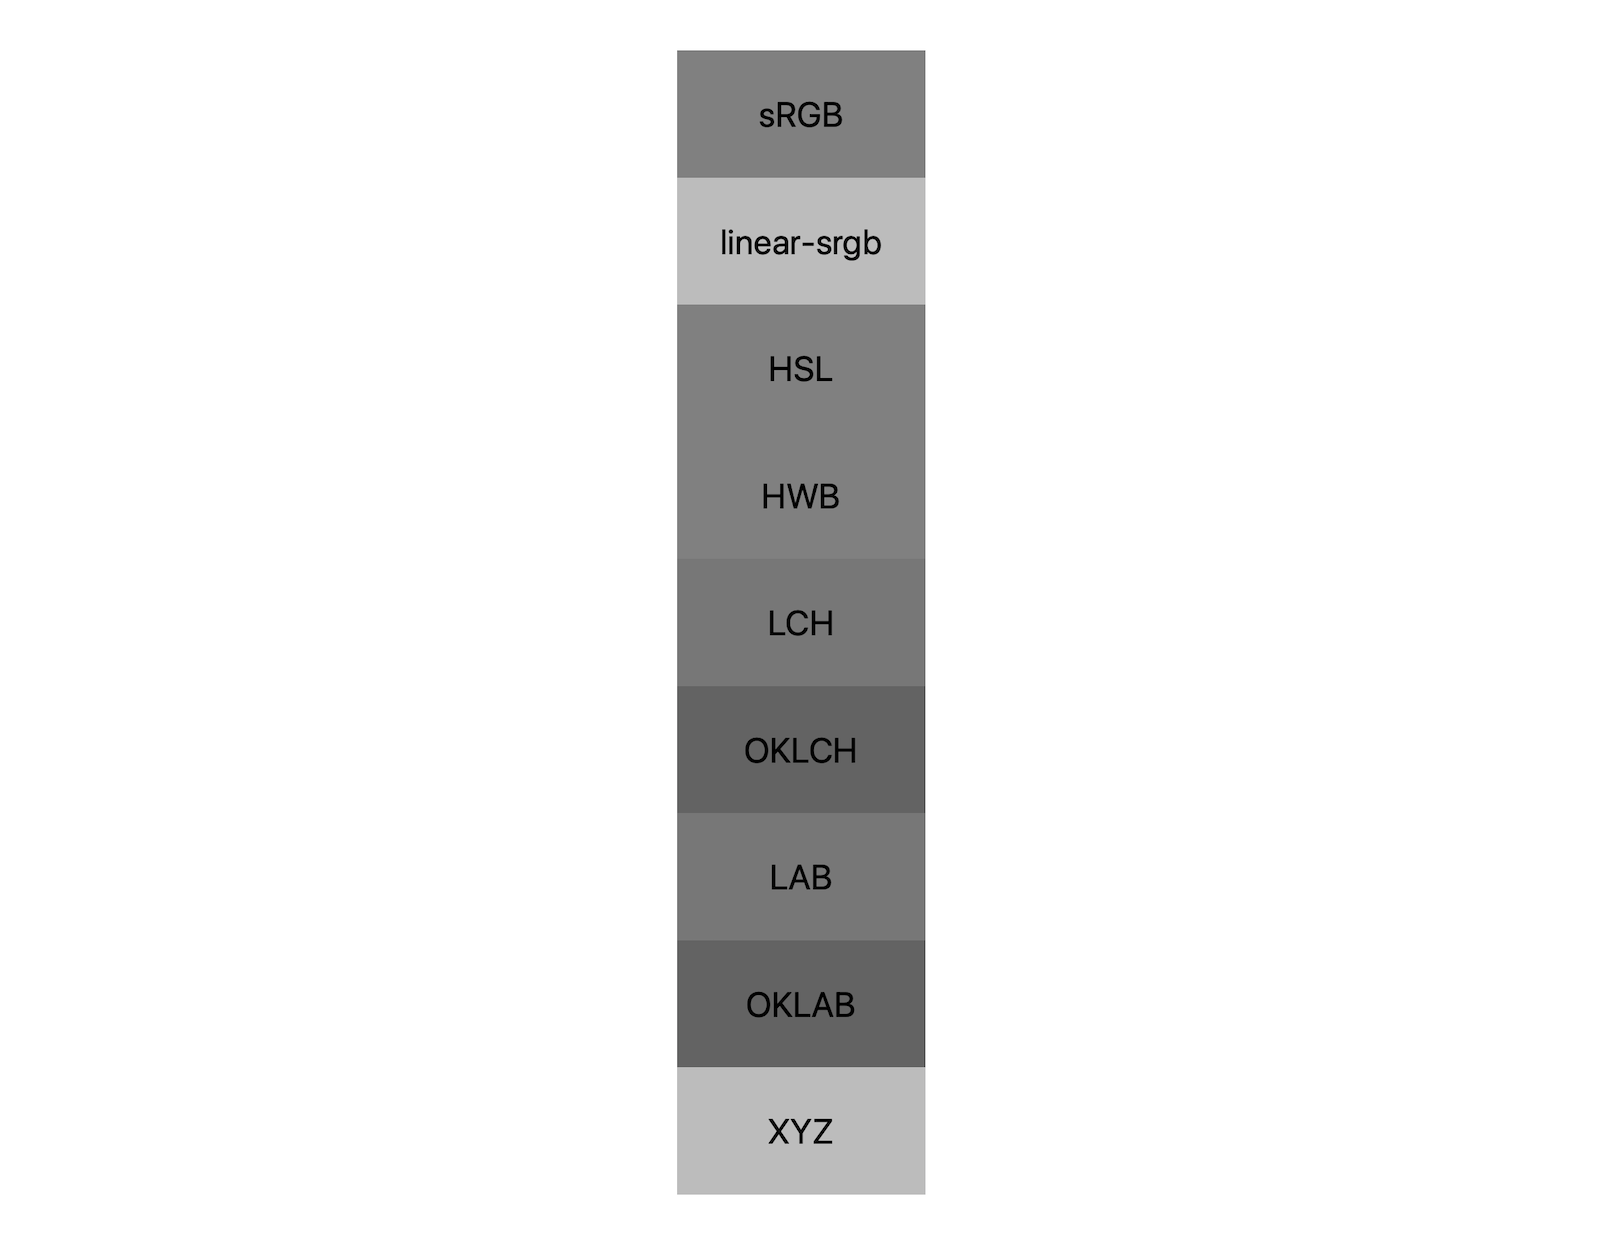 W przypadku 7 przestrzeni kolorów (srgb, linear-srgb, lch, oklch, lab, oklab, xyz) można zaobserwować efekt połączenia czerni i bieli. Pokazanych jest około 5 różnych odcieni, co pokazuje, że każda przestrzeń barw jest w różny sposób mieszana z szarością.